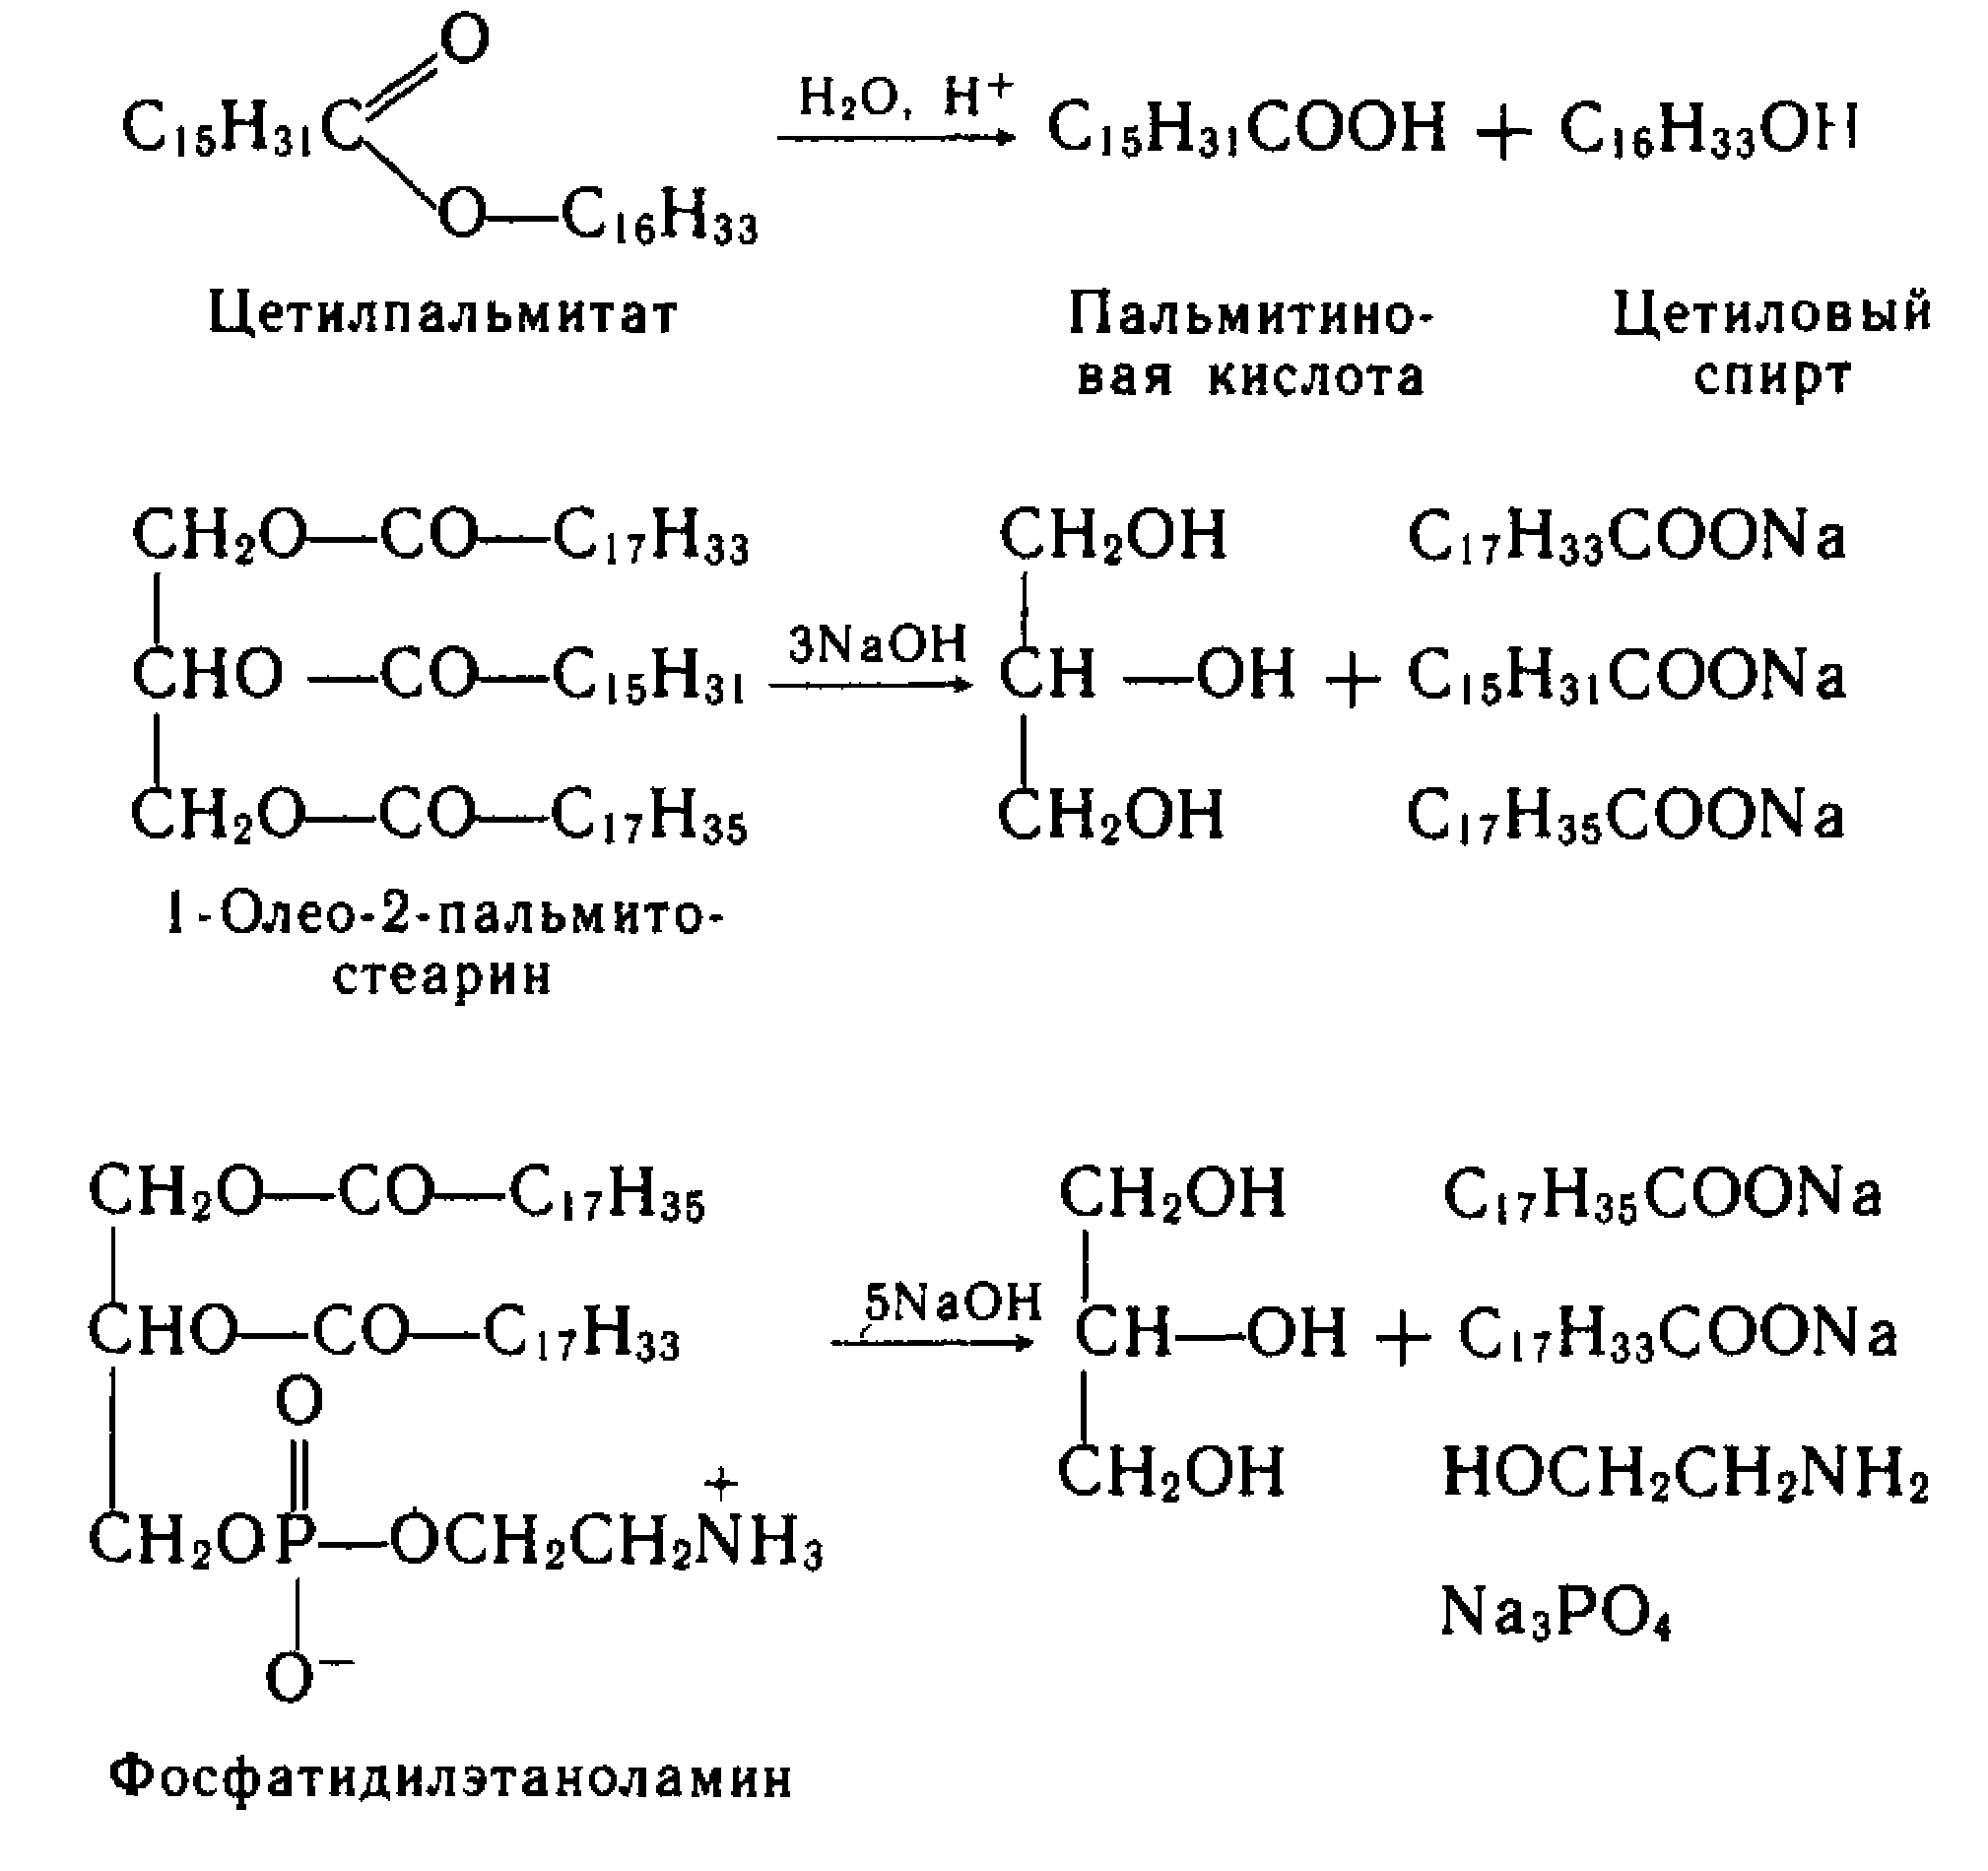 Гидролиз жиров стеариновая кислота. Гидролиз цетилового эфира пальмитиновой кислоты. Формула воска липиды.